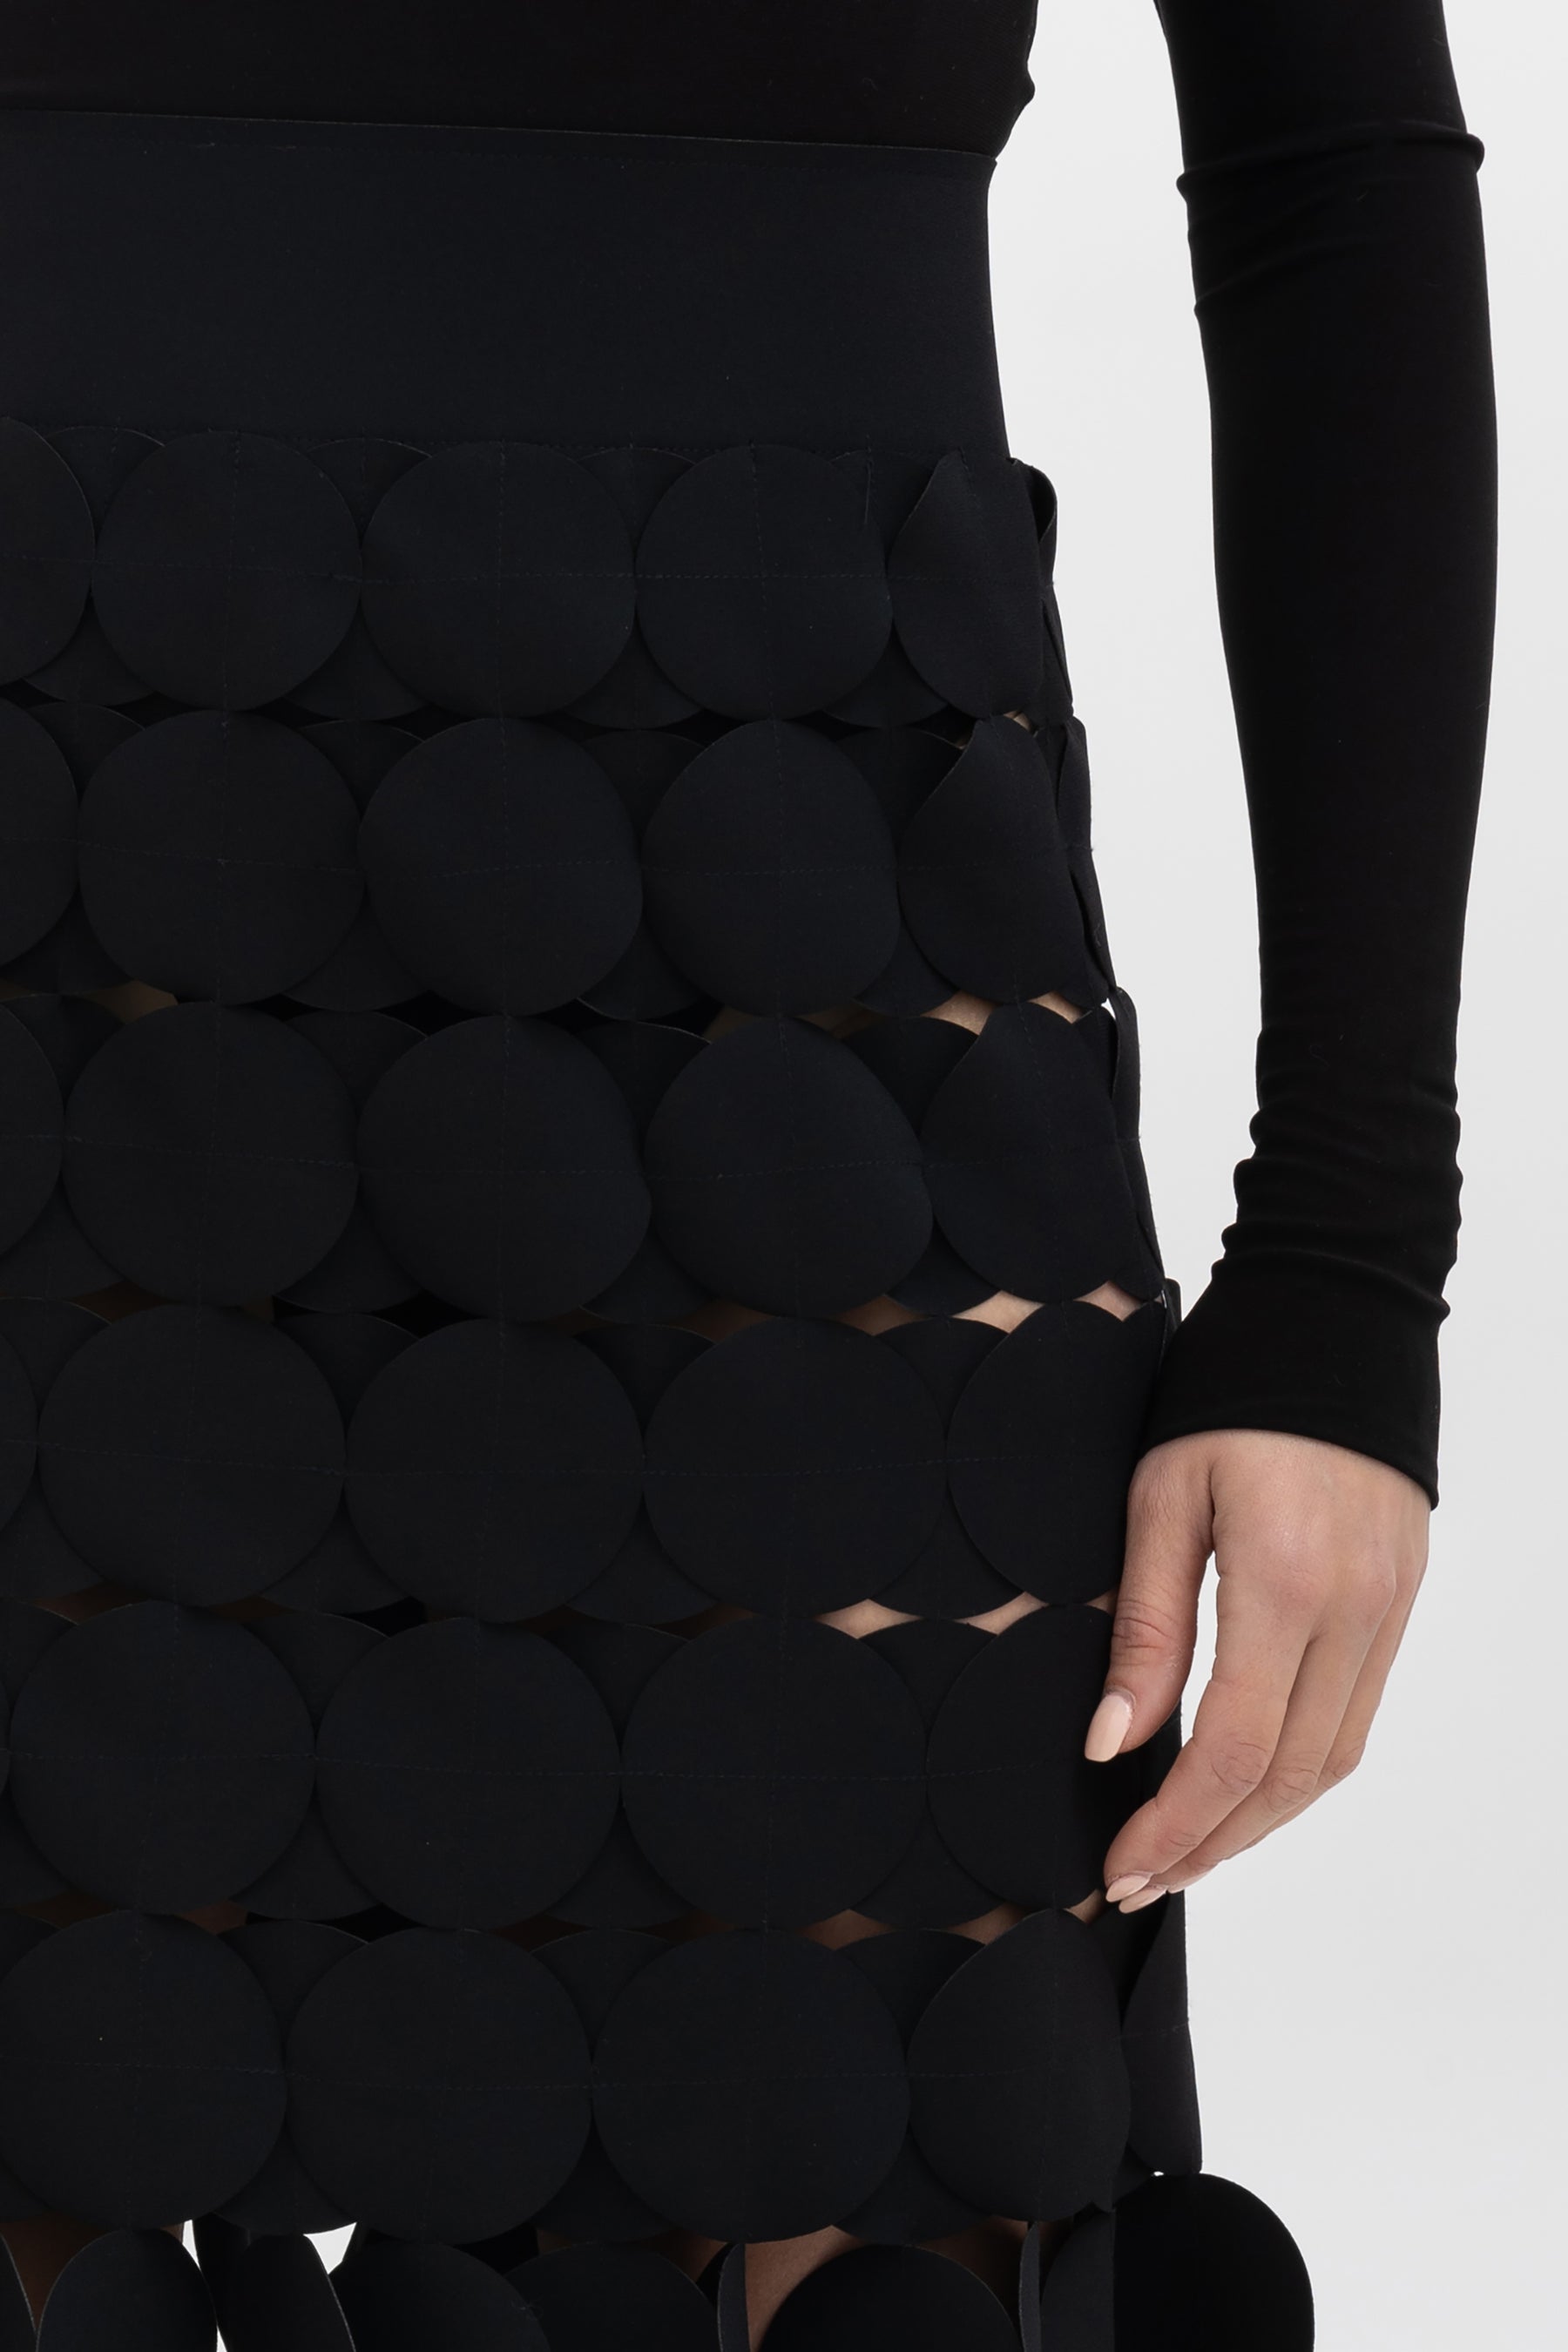 Laser Cut Multi-Circle Skirt